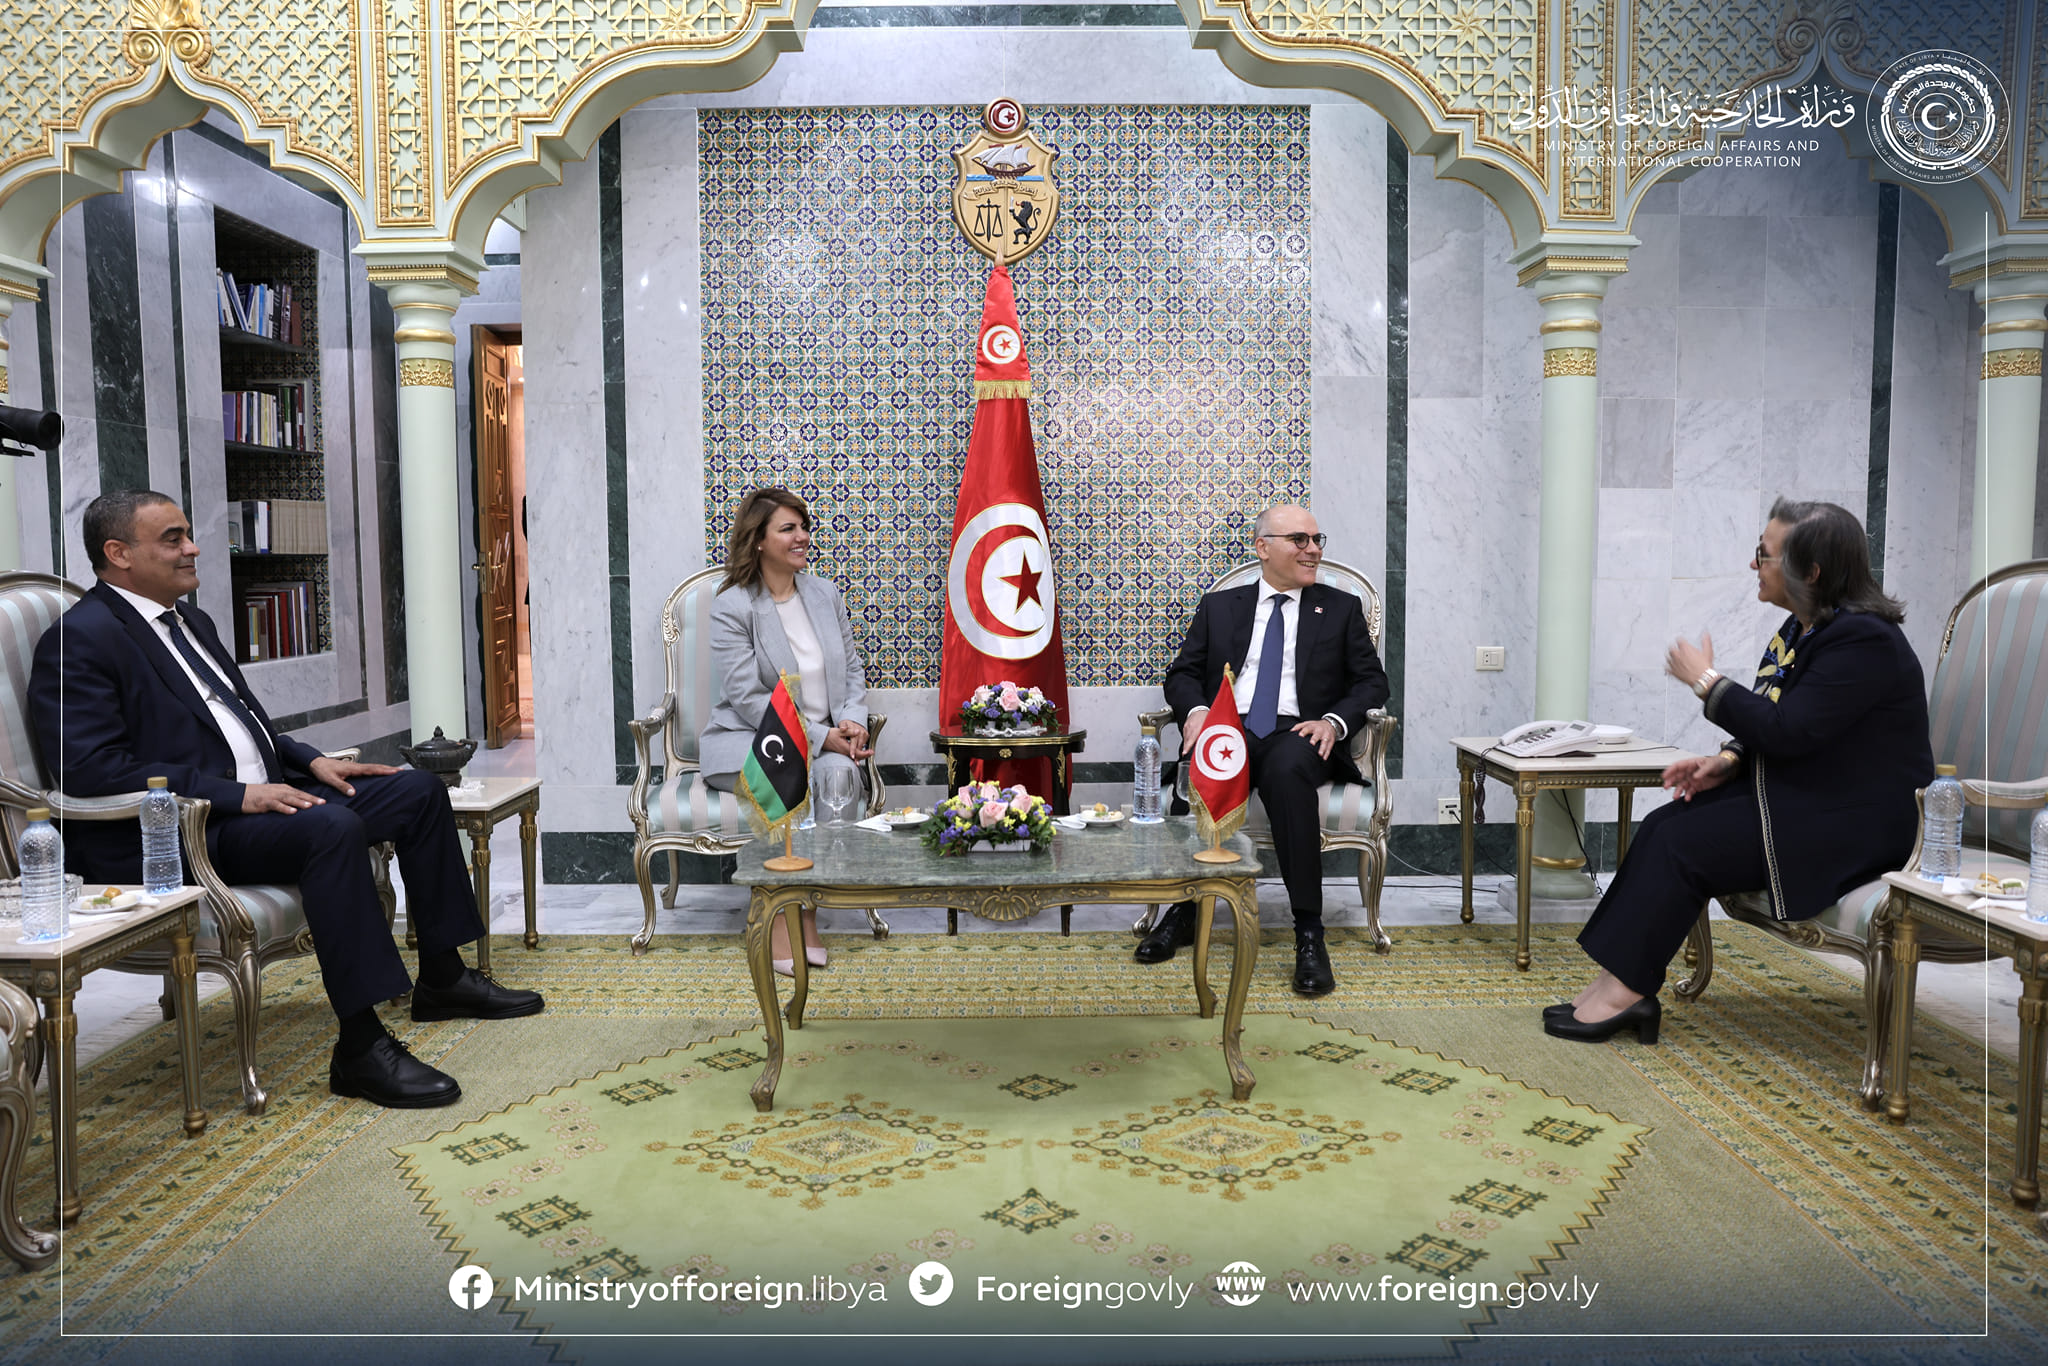 Une délégation ministérielle libyenne s'entretient à Tunis sur des questions liées à la coopération bilatérale entre les deux pays.